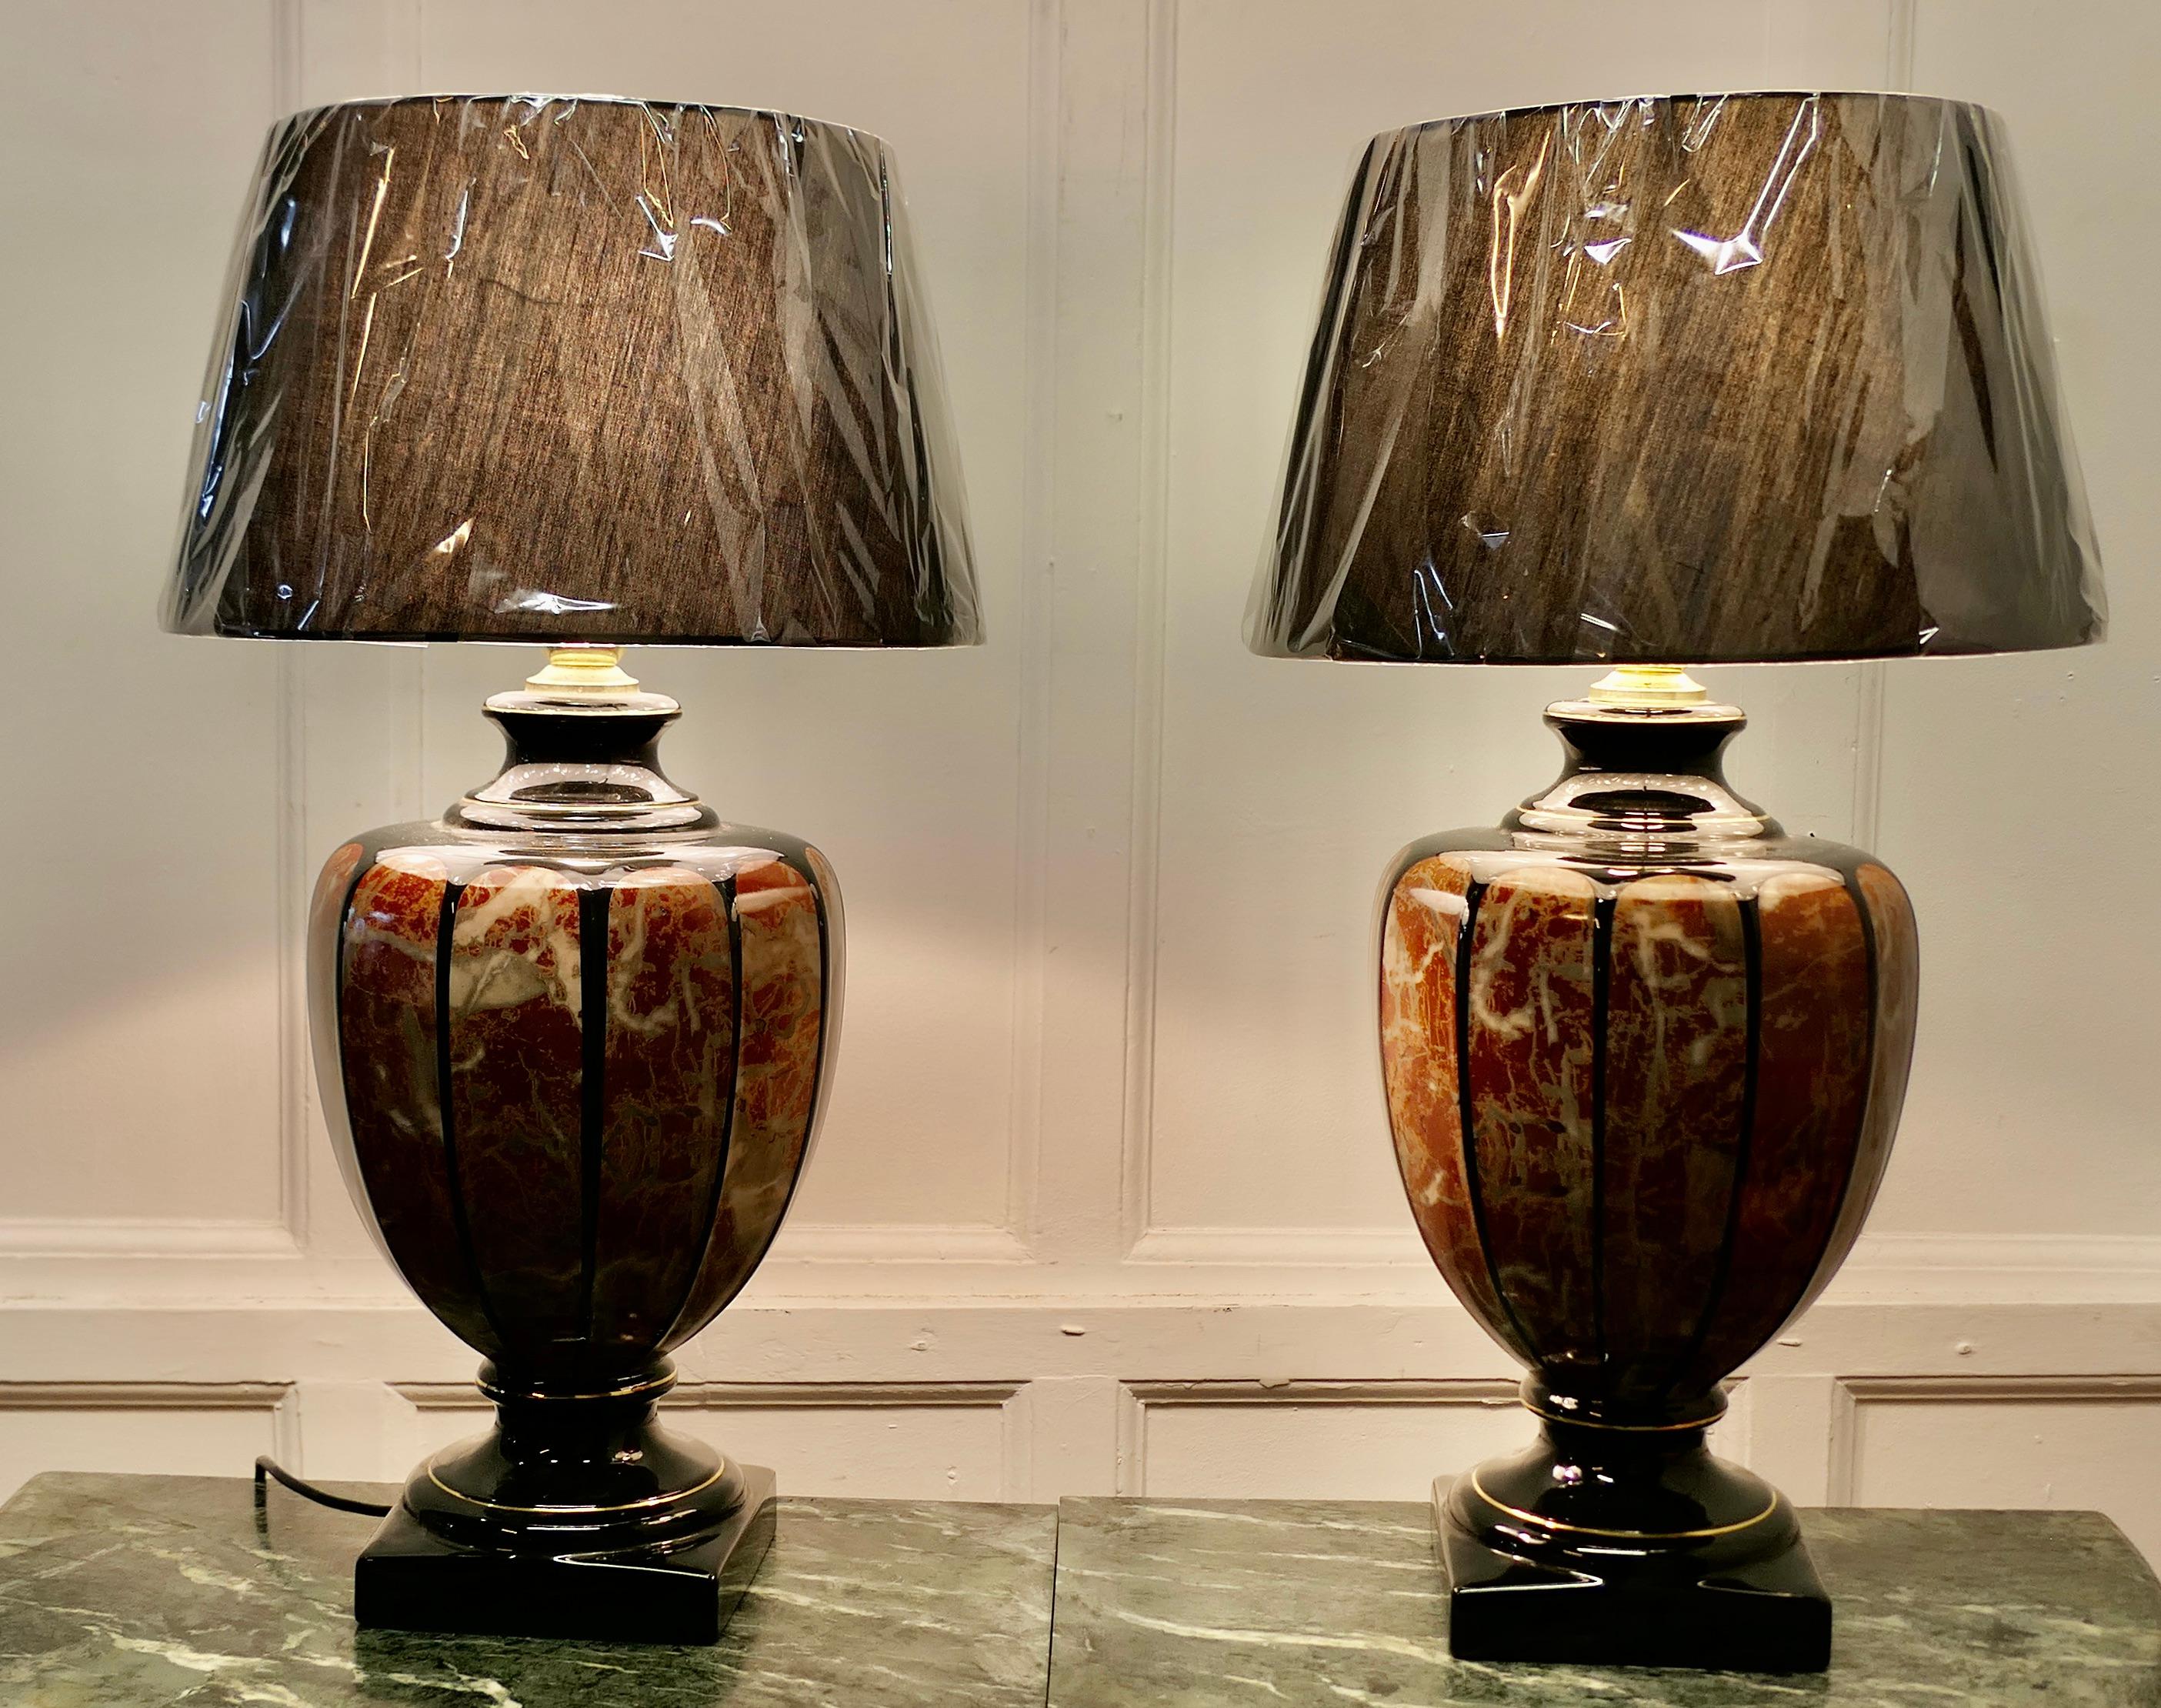 Paire de lampes de table italiennes en marbre simulé 

Les lampes reposent sur un pied carré et ont un grand bol en céramique en forme de balustre qui est décoré comme du marbre italien simulé.  

Les lampes sont noires et dorées, avec toutes les